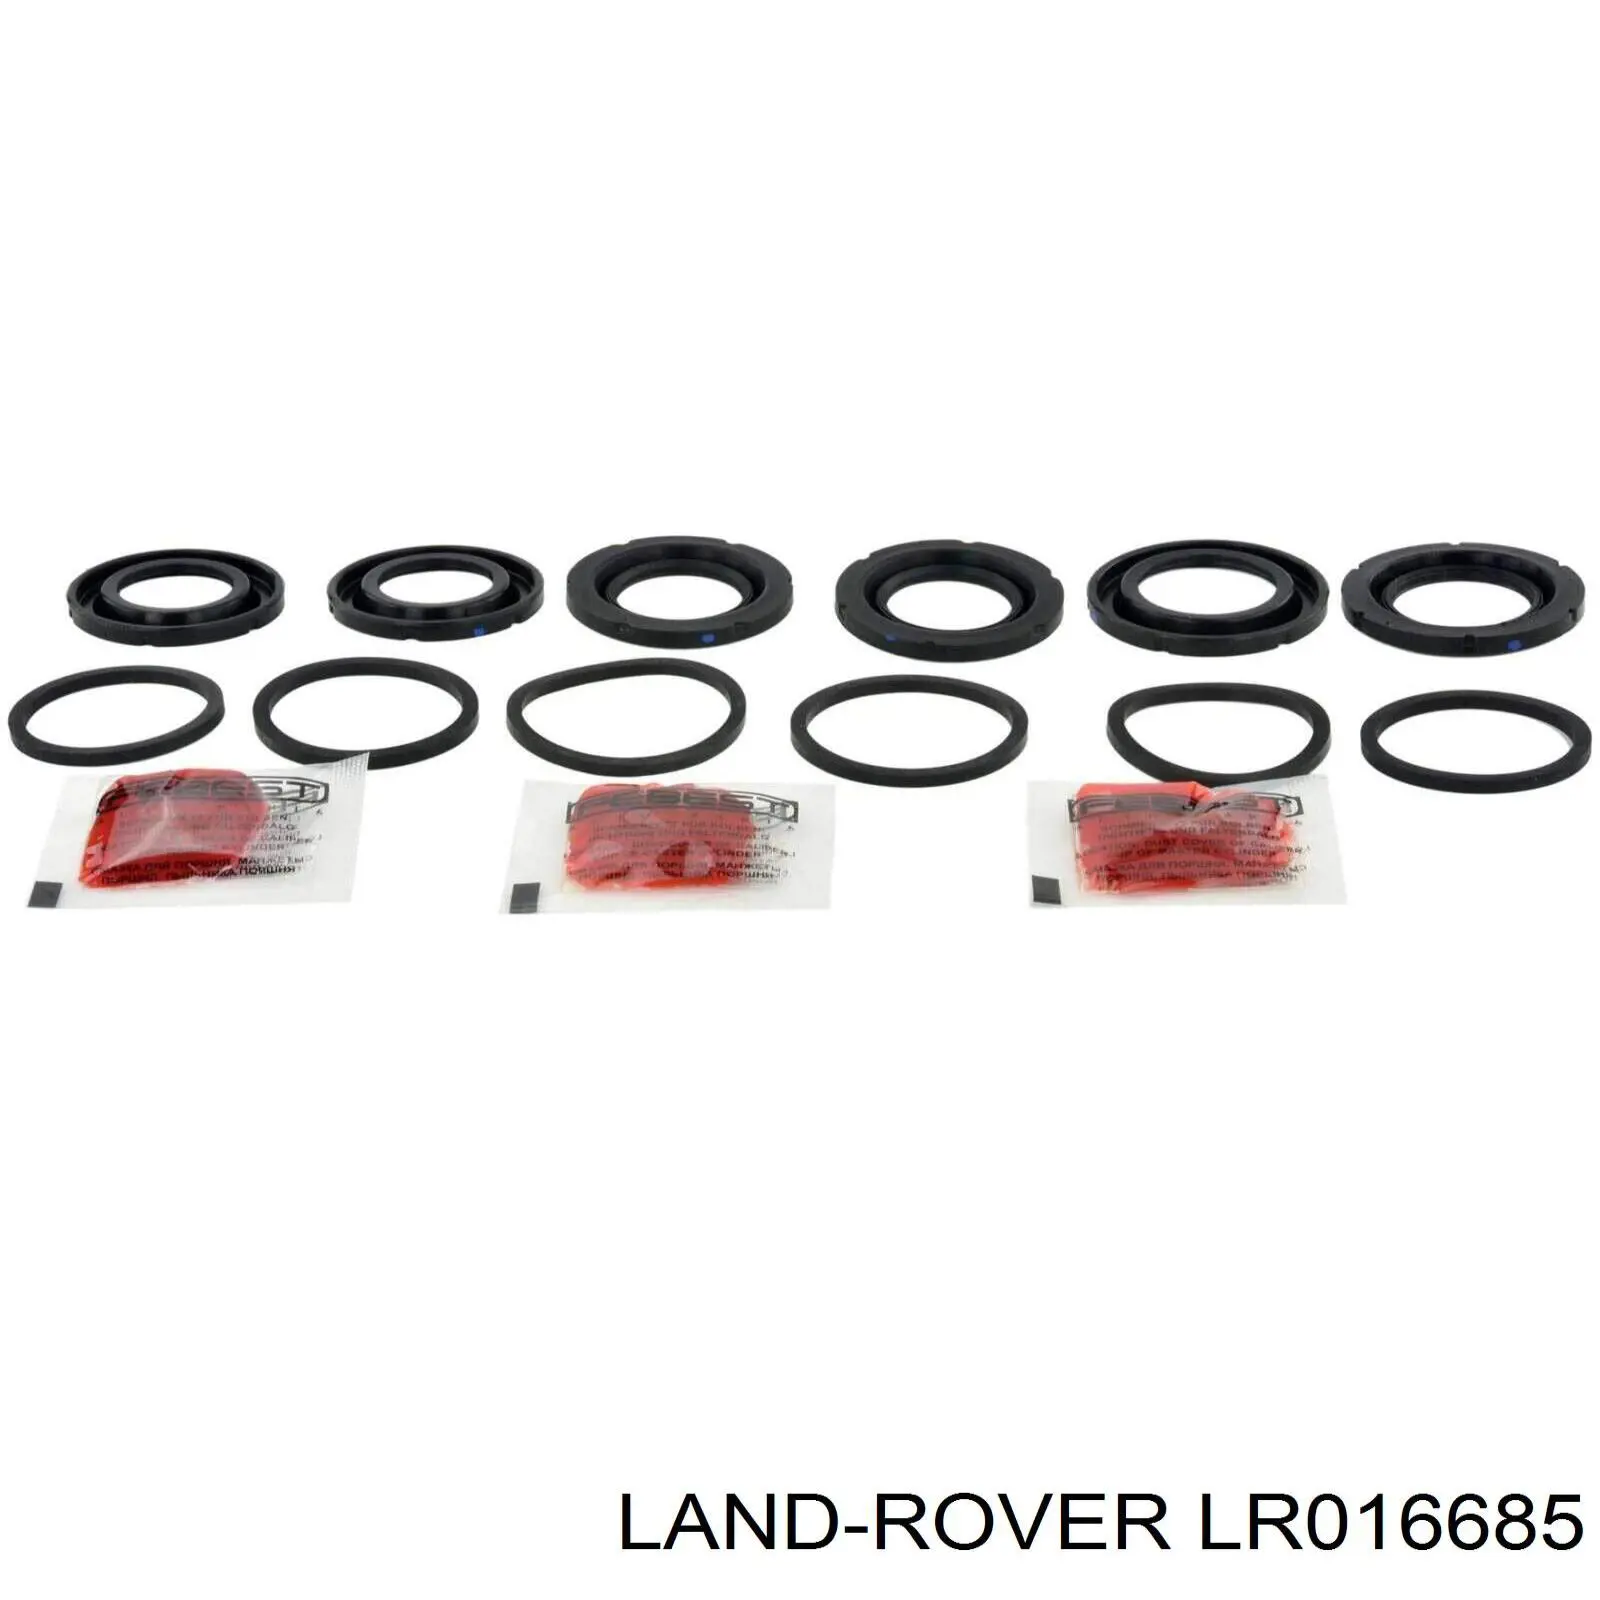 LR016685 Land Rover juego de reparación, pinza de freno delantero